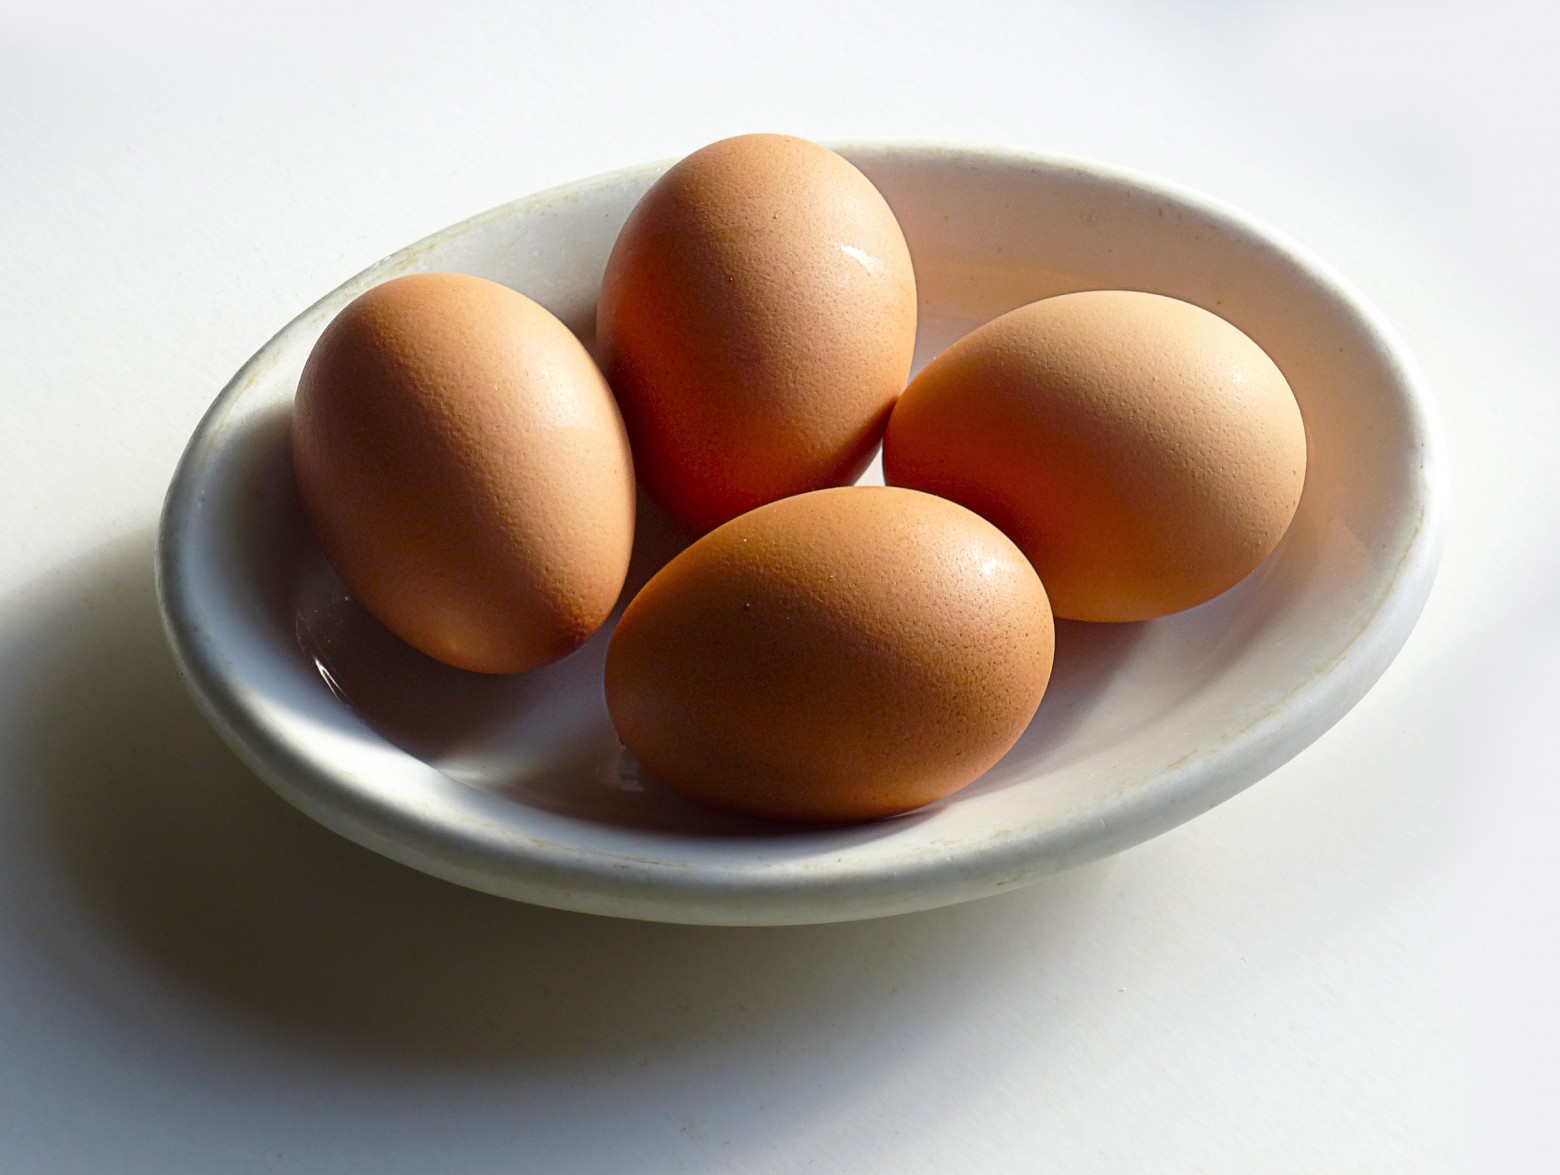 Les 4 unités d’œufs à 1200 millimes au lieu de 1100 millimes ?